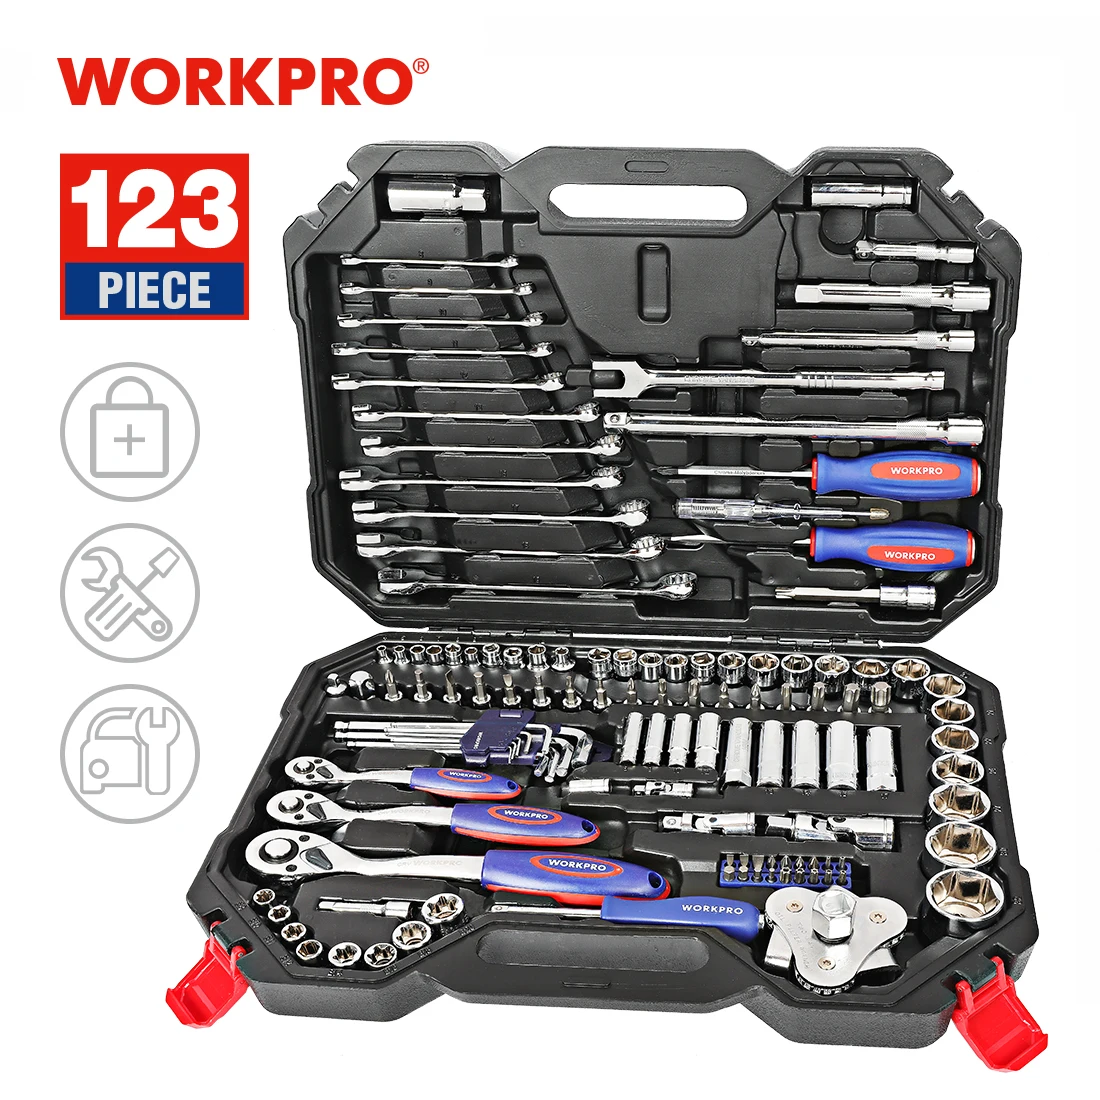 Workpro conjunto de ferramentas manuais para o reparo do carro catraca chave chave soquete conjunto profissional bicicleta kits de ferramentas de reparo do carro